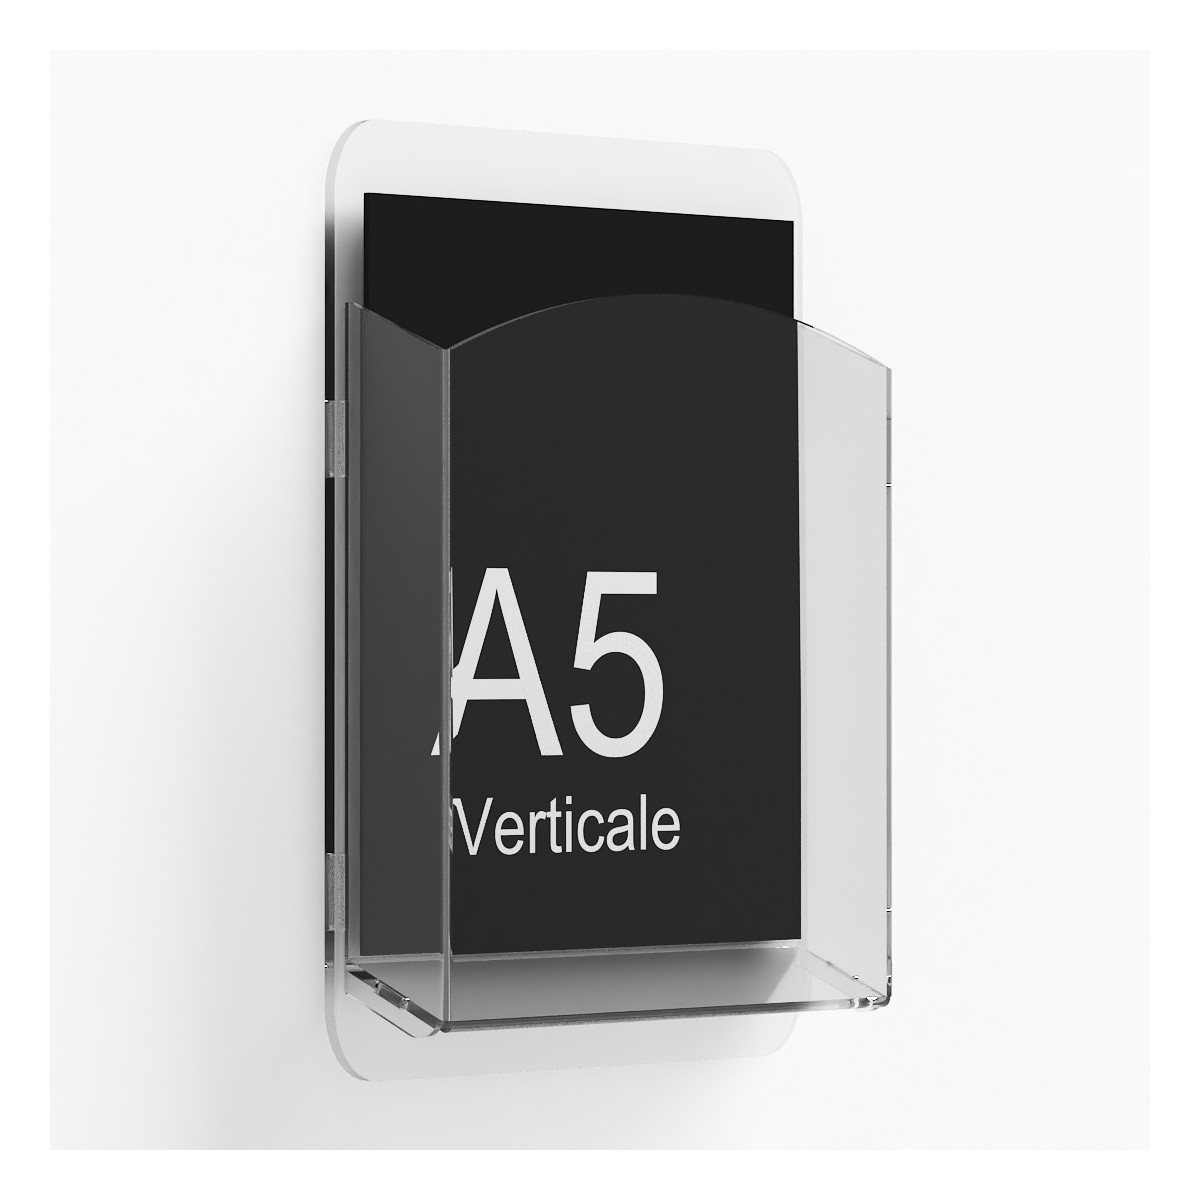 E-403 - Porta depliant da parete - Tasca per depliant formato A5